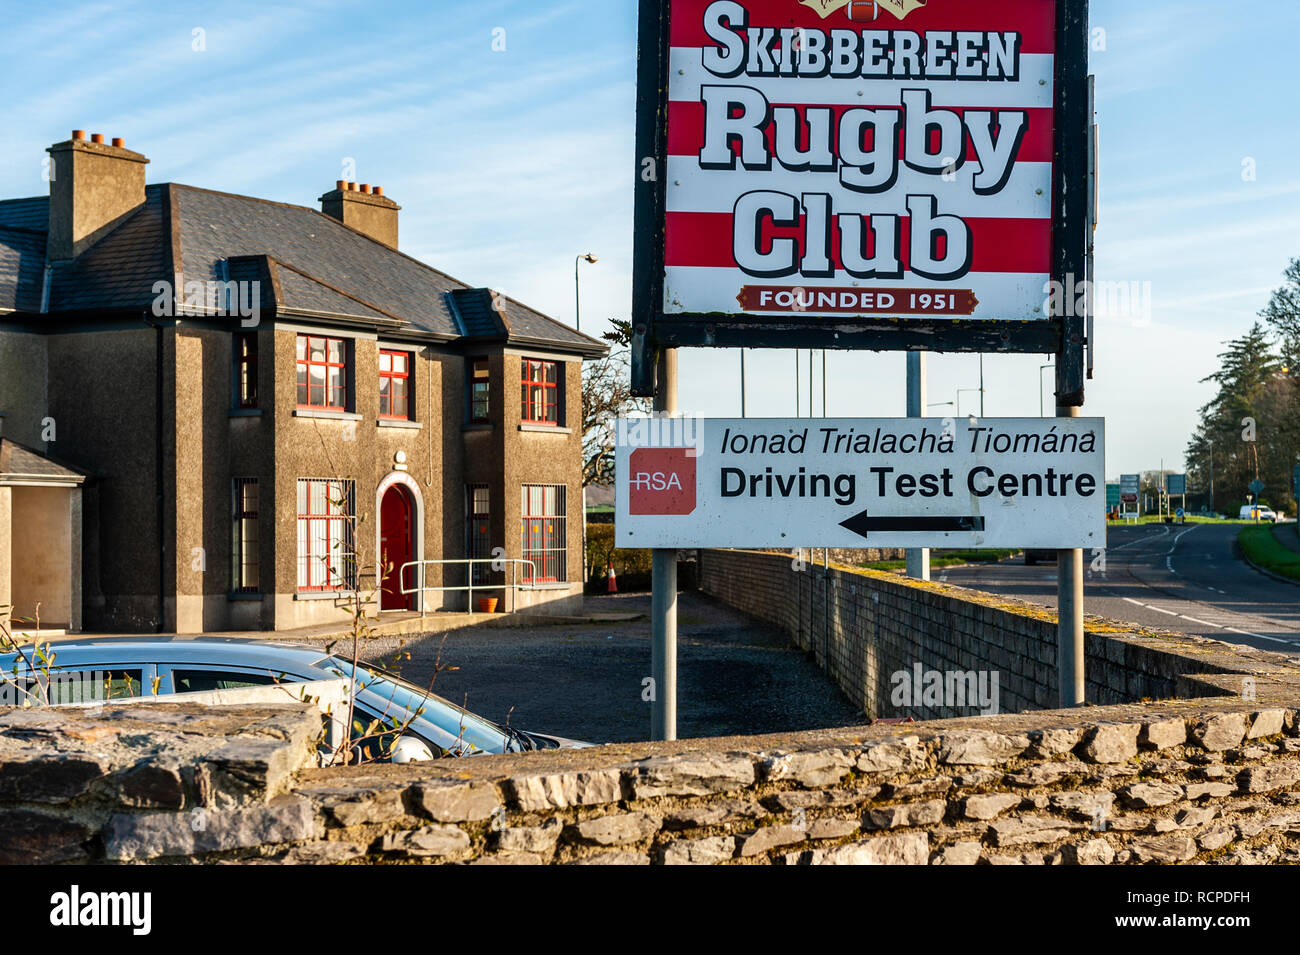 L'Autorité irlandaise de sécurité routière examen de conduite au centre, Club de Rugby de Skibbereen Skibbereen, West Cork, Irlande avec copie espace. Banque D'Images